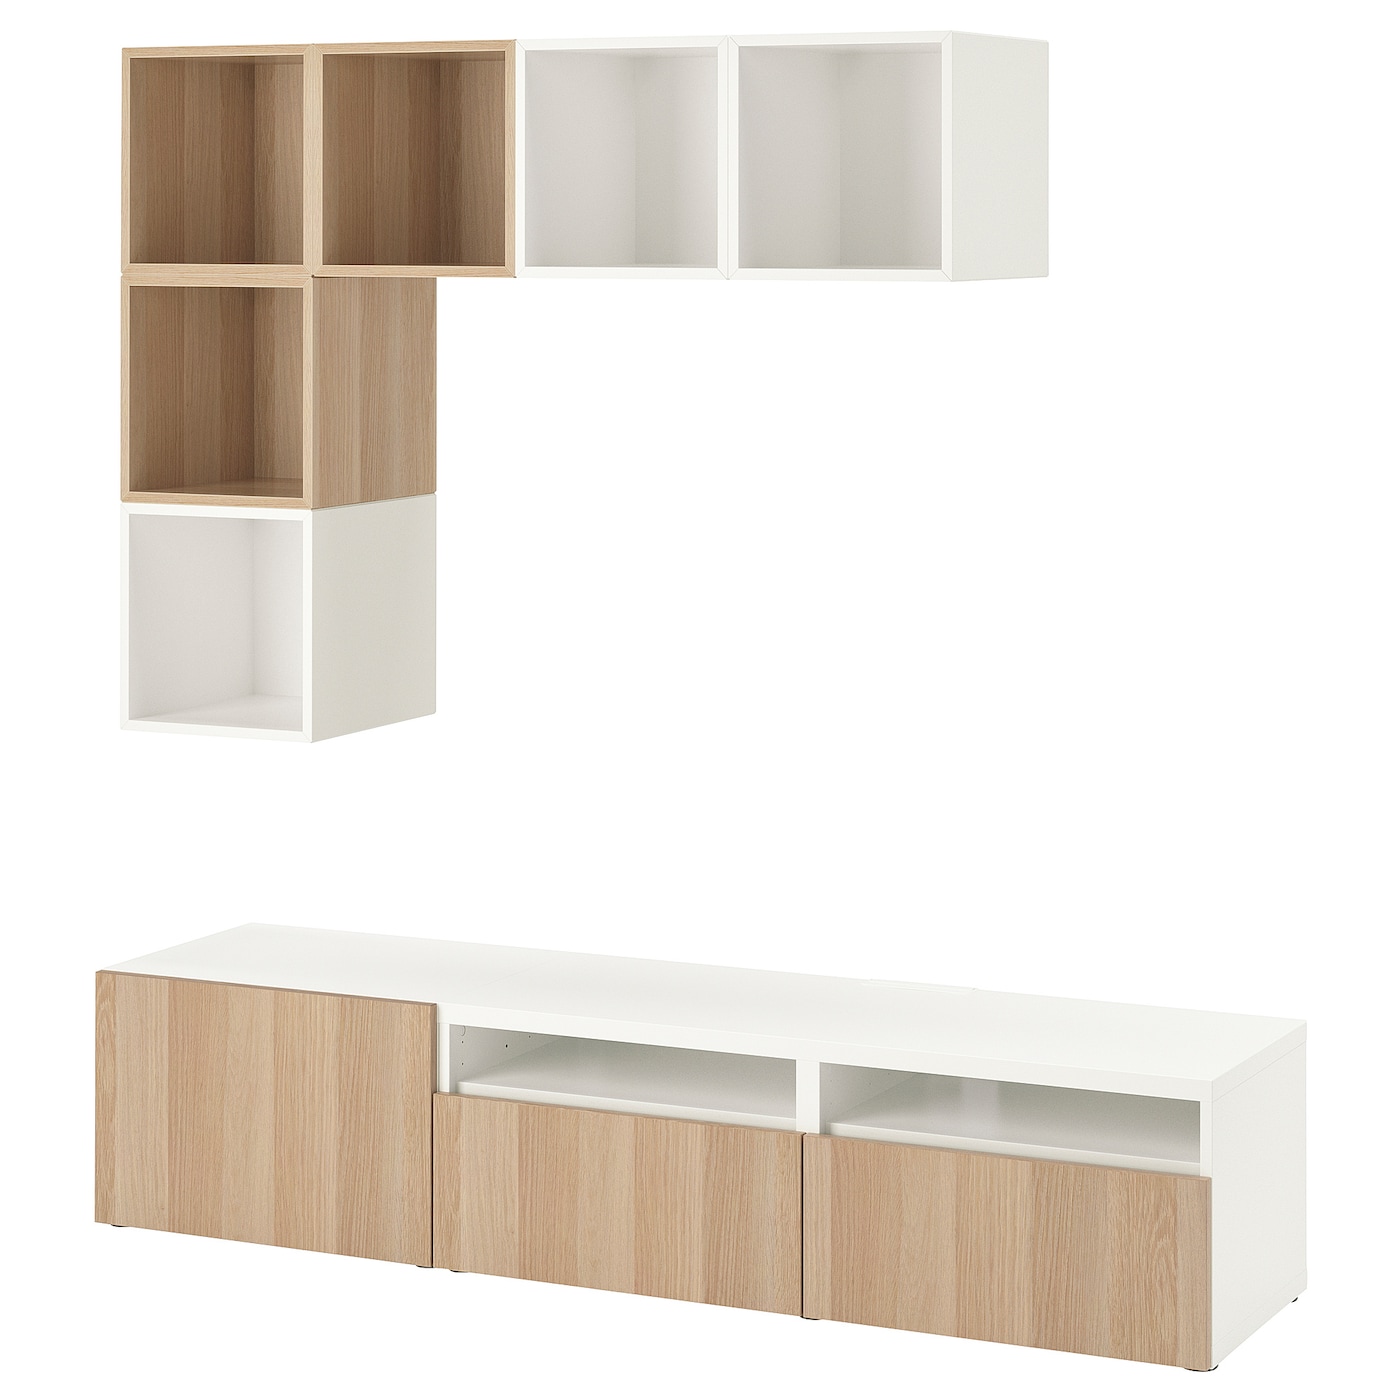 Комплект мебели д/гостиной  - IKEA BESTÅ/BESTA EKET, 170x70x180см, белый/светло-коричневый, БЕСТО ЭКЕТ ИКЕА